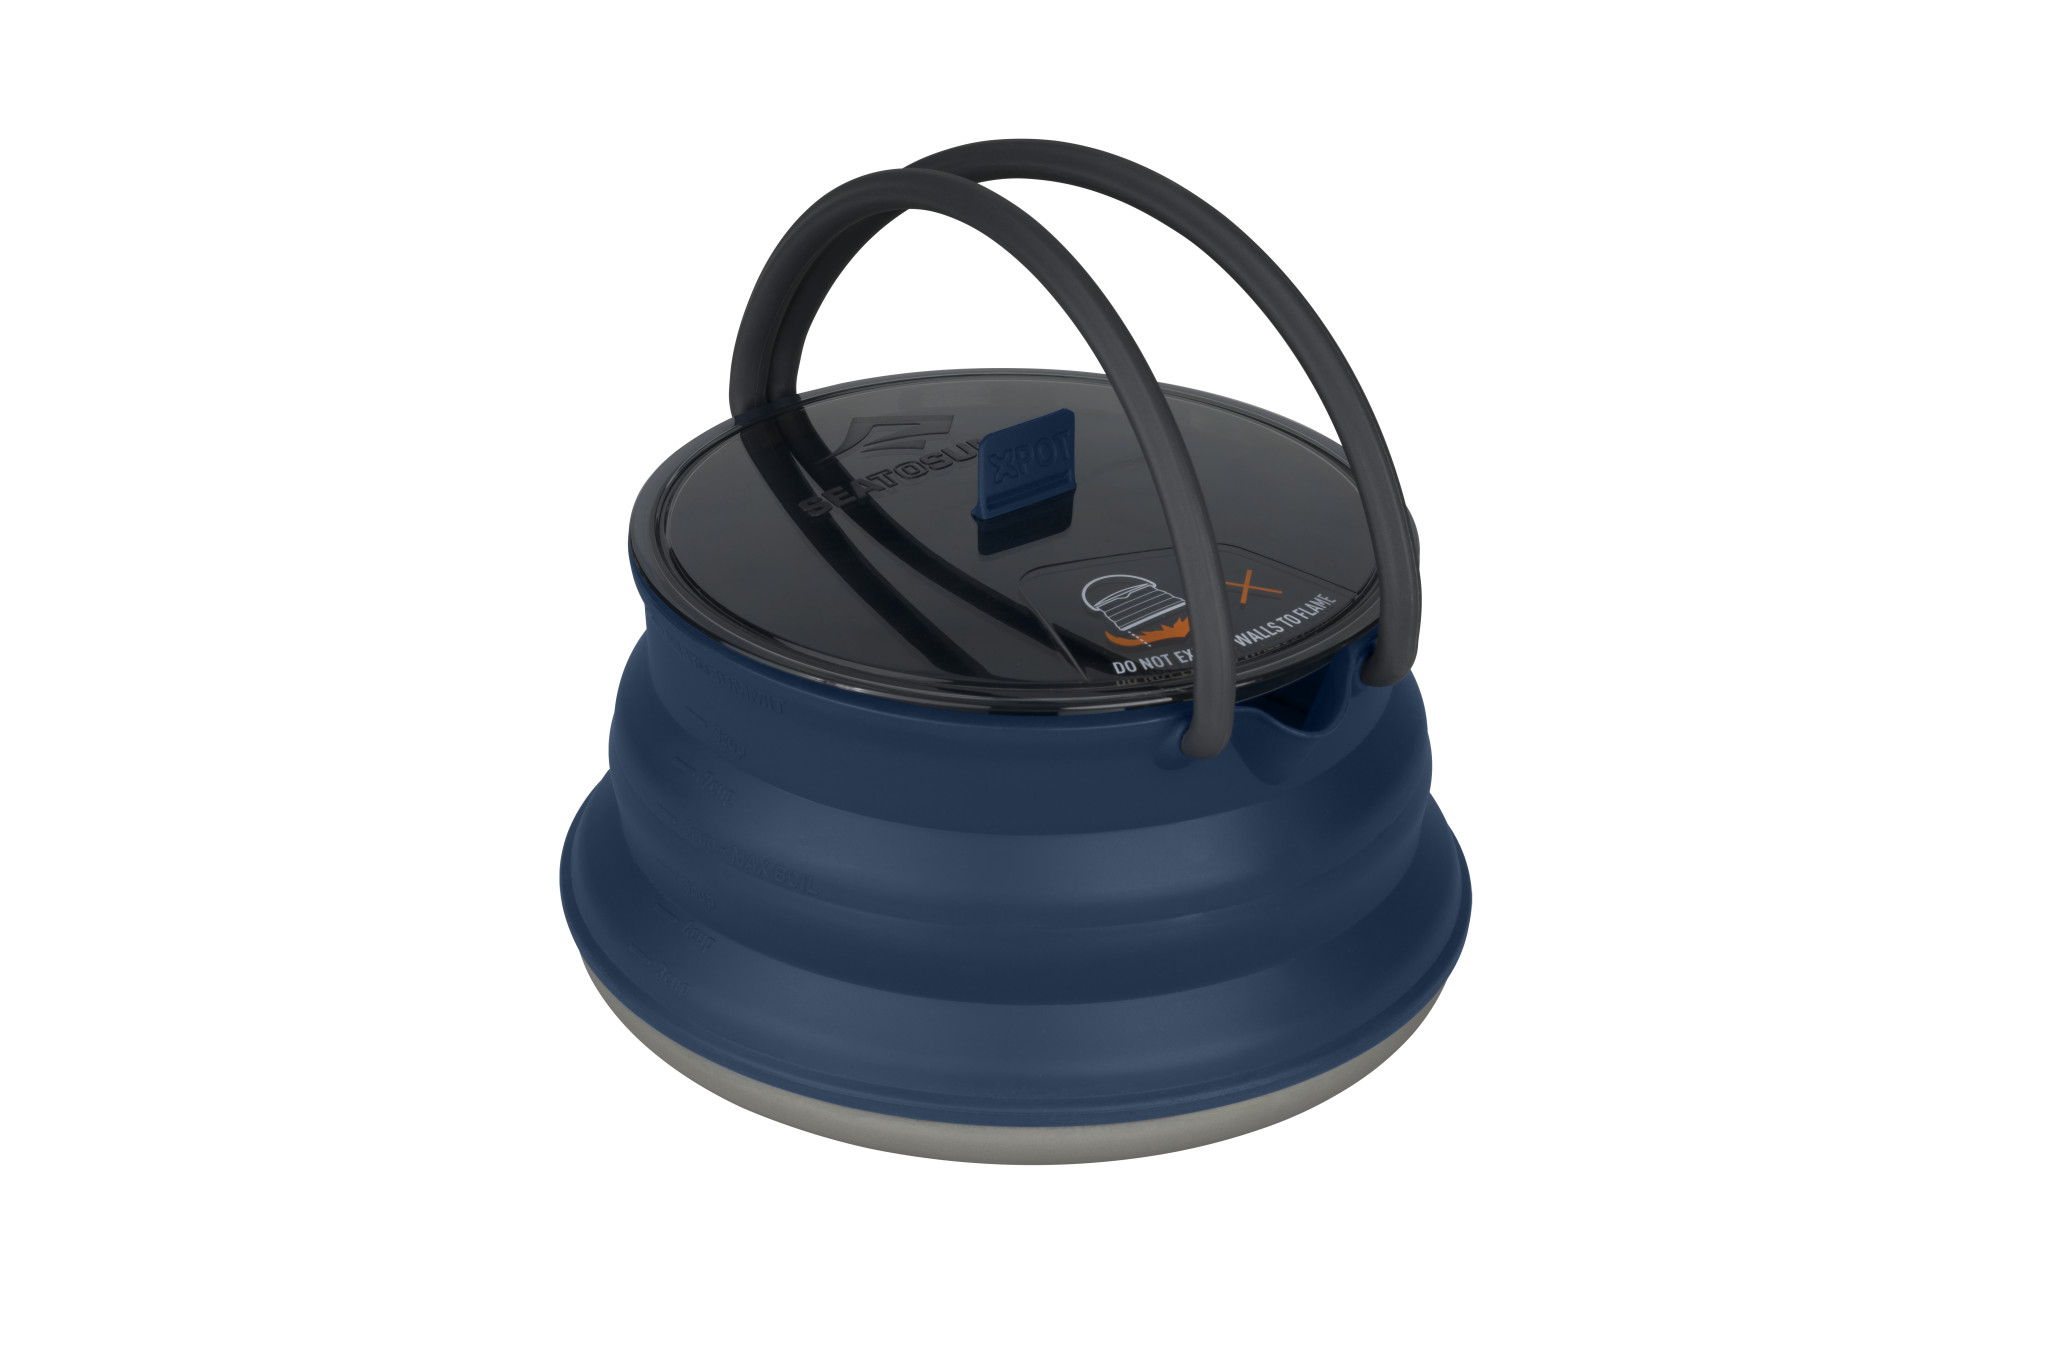 Konvička Sea to Summit X-Pot Kettle 2 litry velikost: OS (UNI), barva: modrá